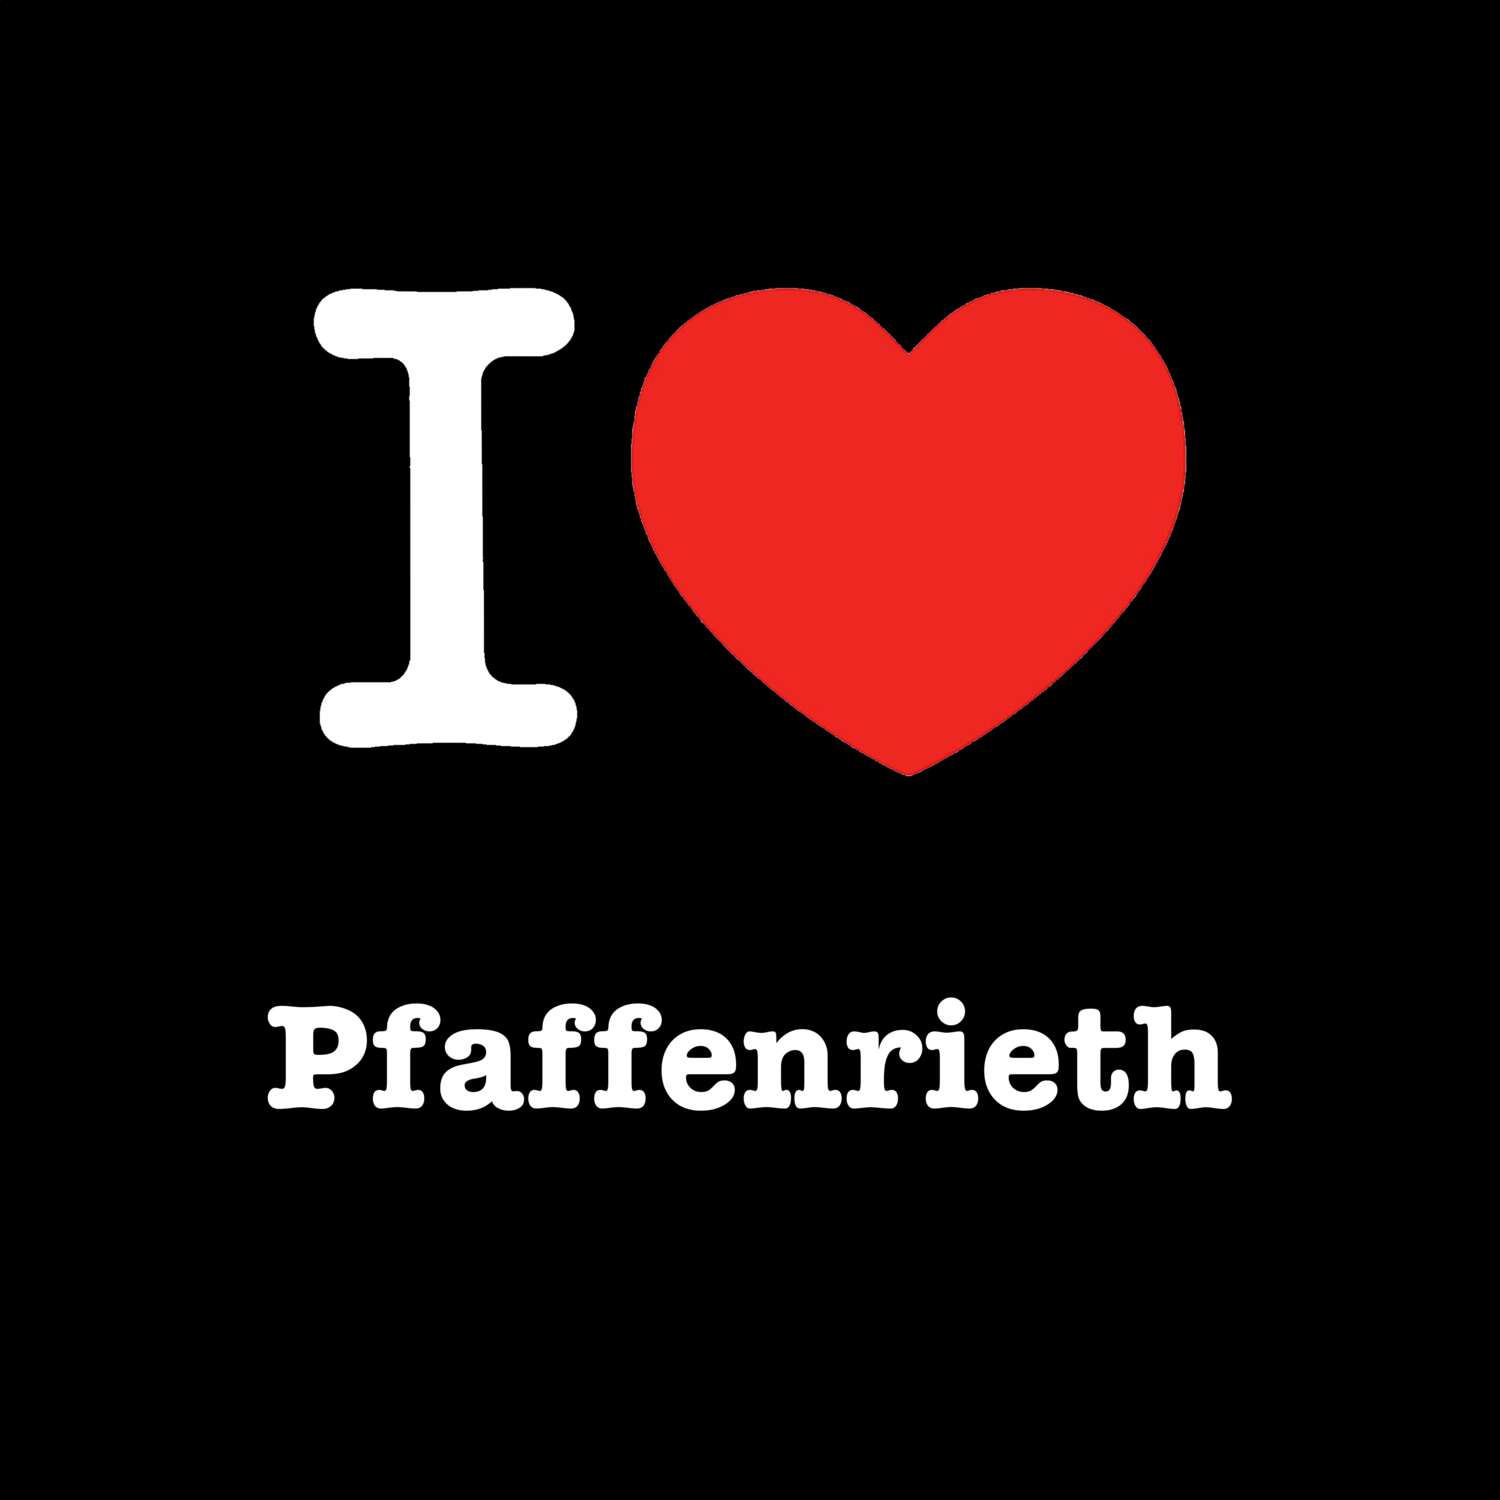 Pfaffenrieth T-Shirt »I love«